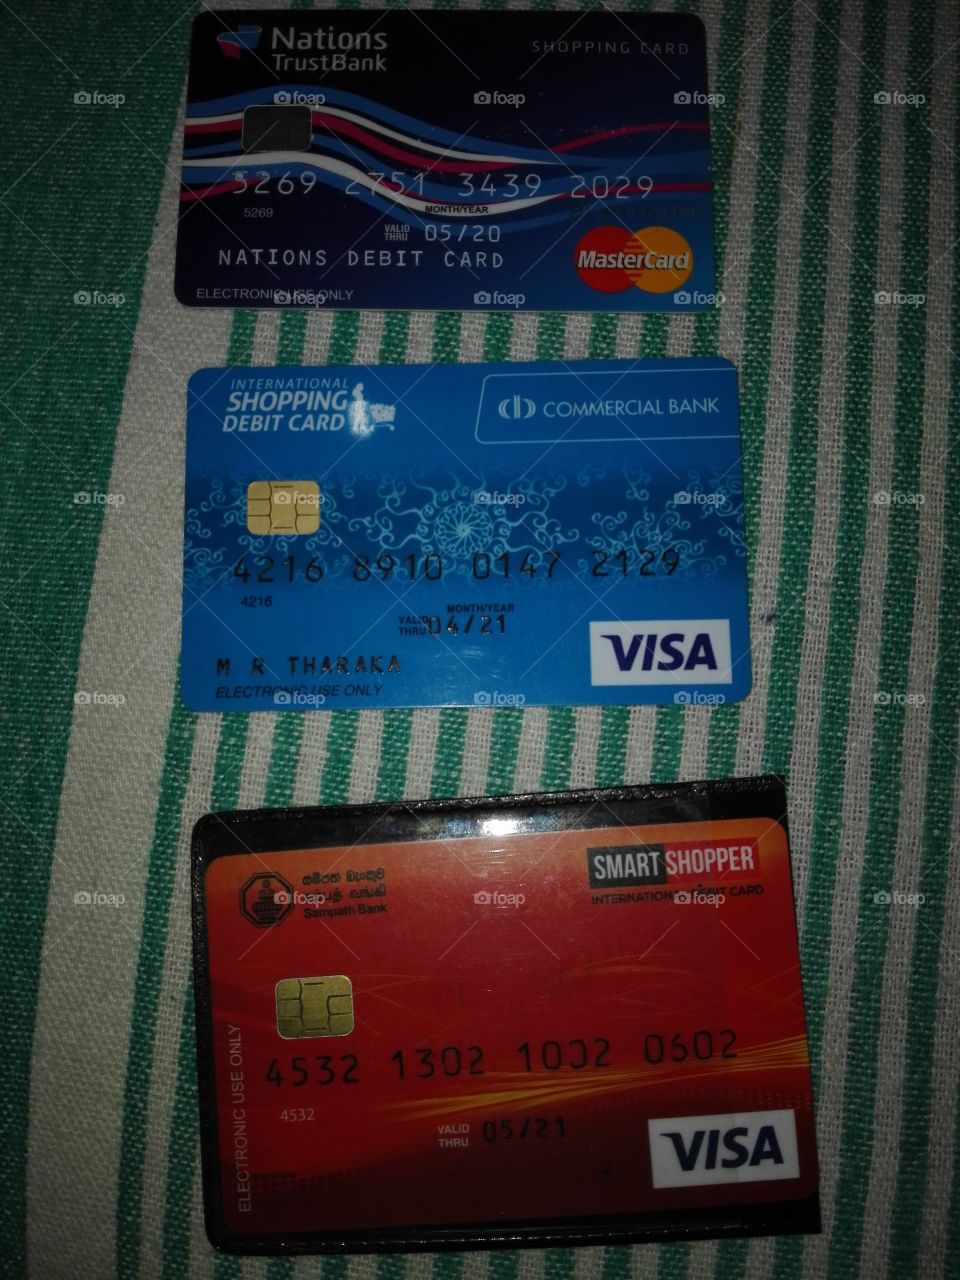 debit cards banks of srilanka